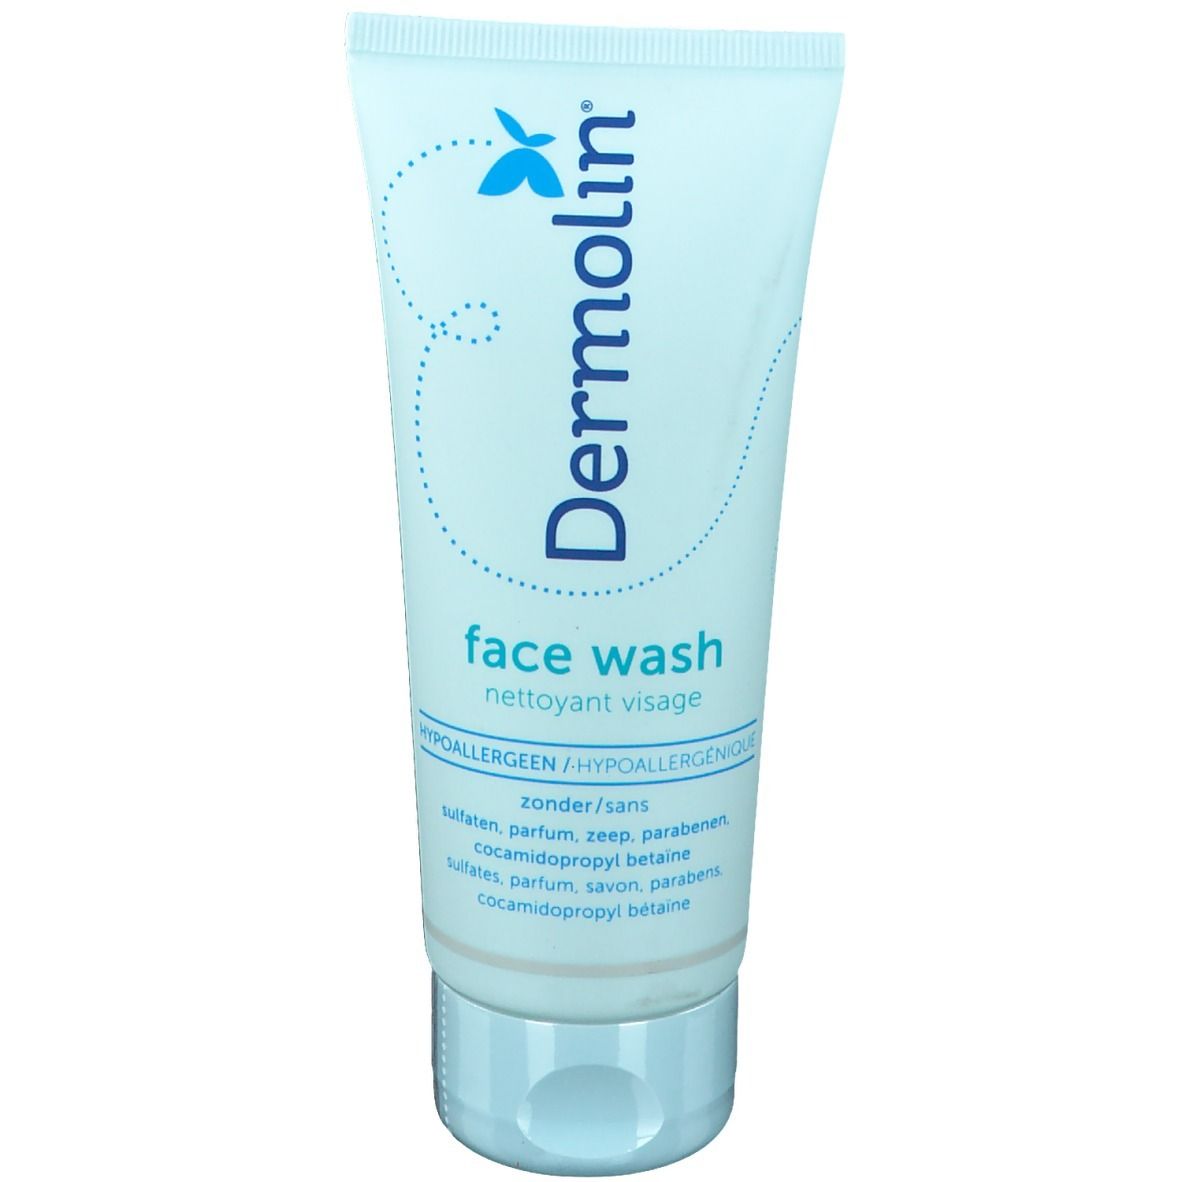 Dermolin® Nettoyage du visage